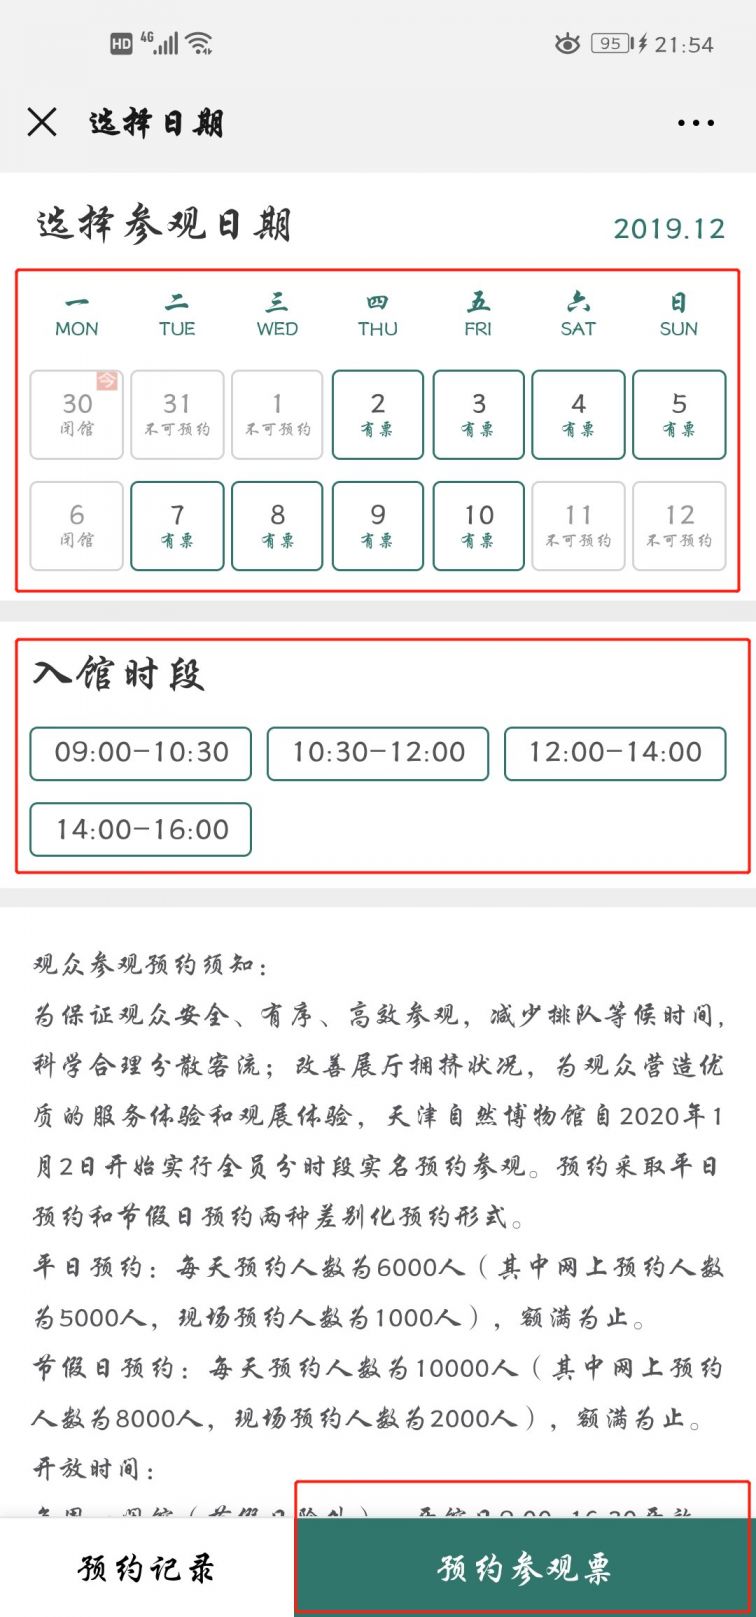 天津自然博物馆预约流程